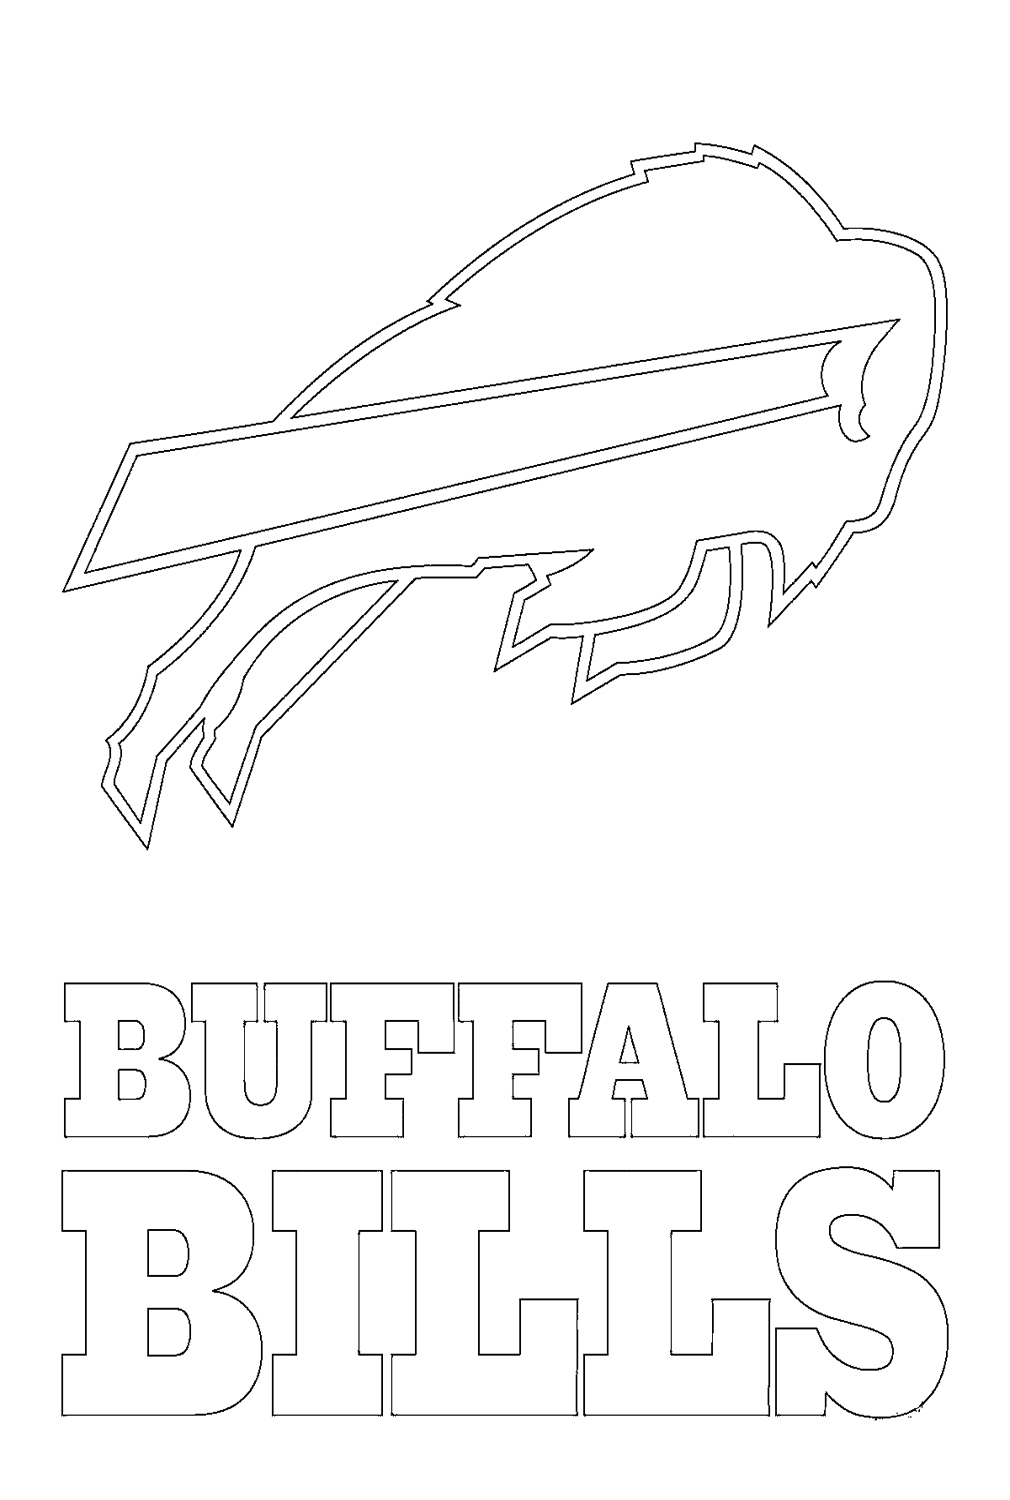 Logotipo do Buffalo Bills da NFL